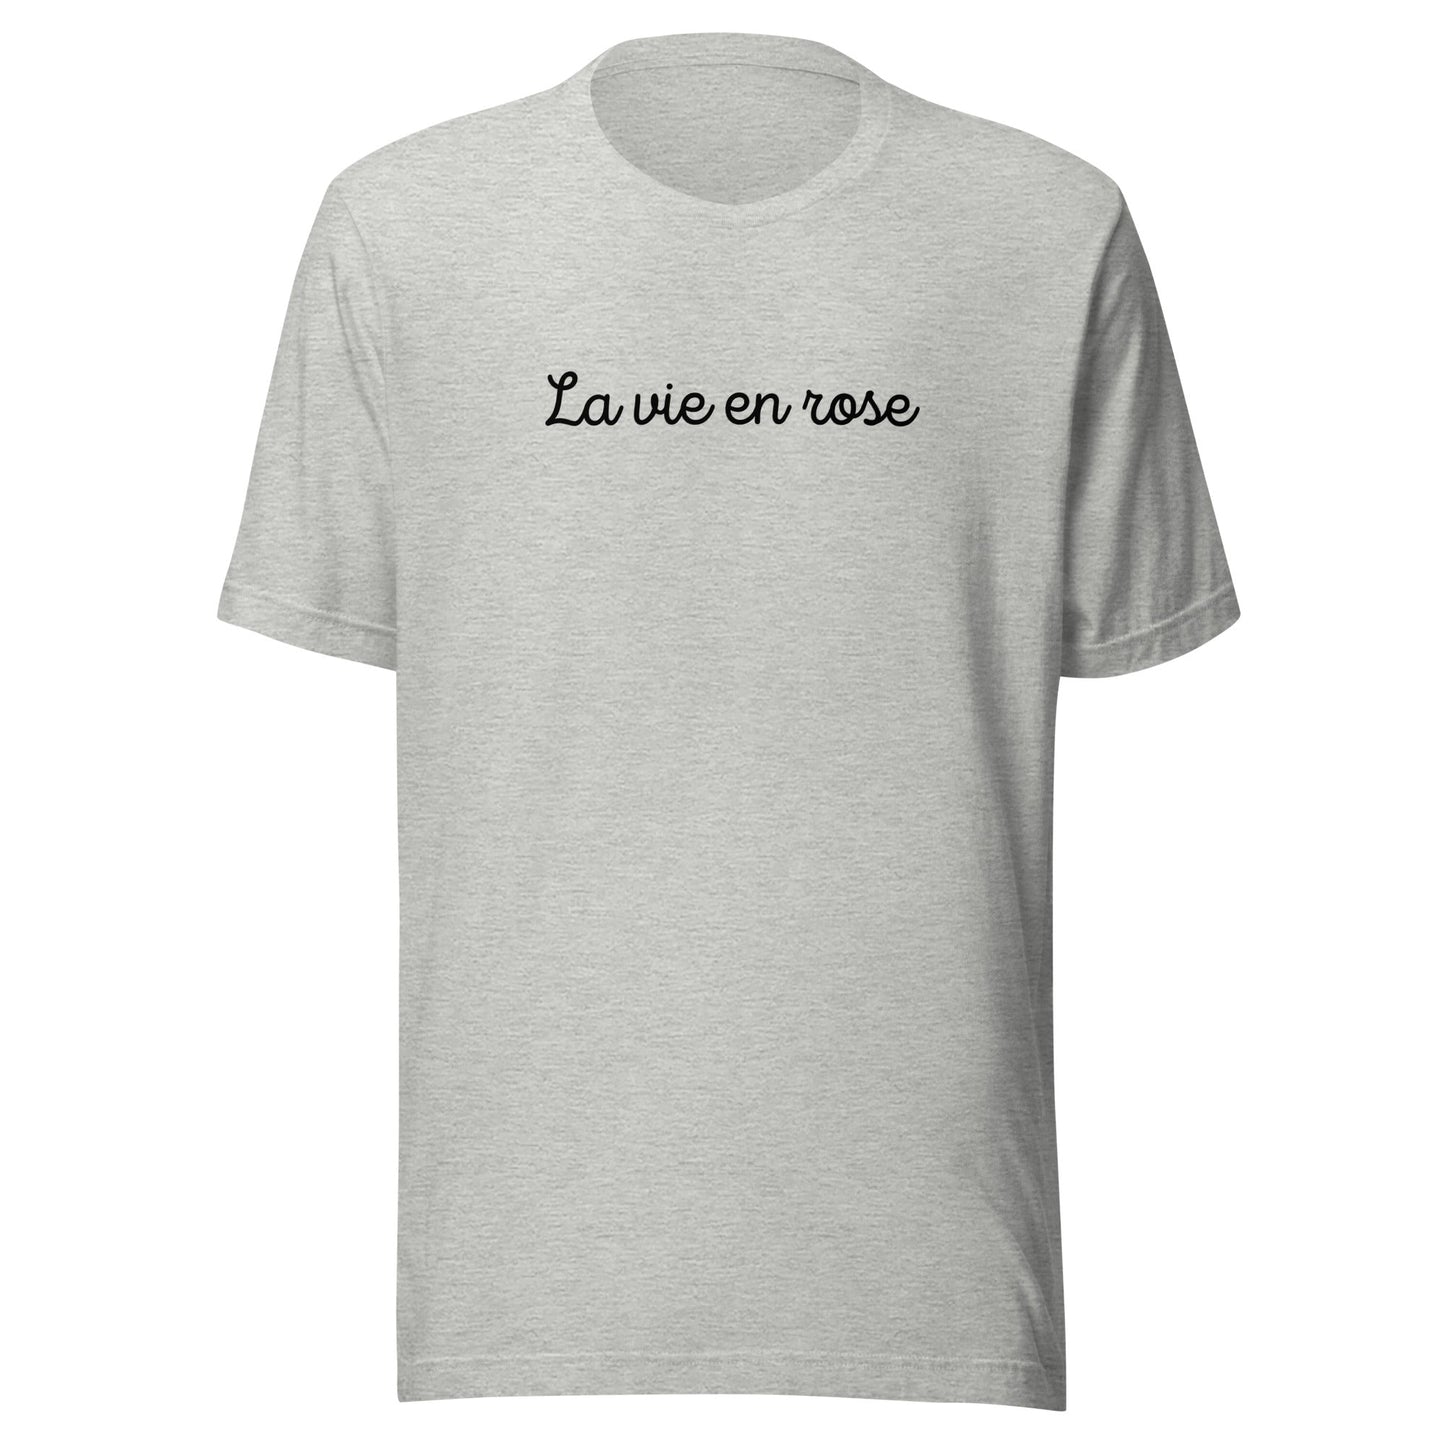 La vie en Rose - Unisex t-shirt - lilaloop - T-shirt